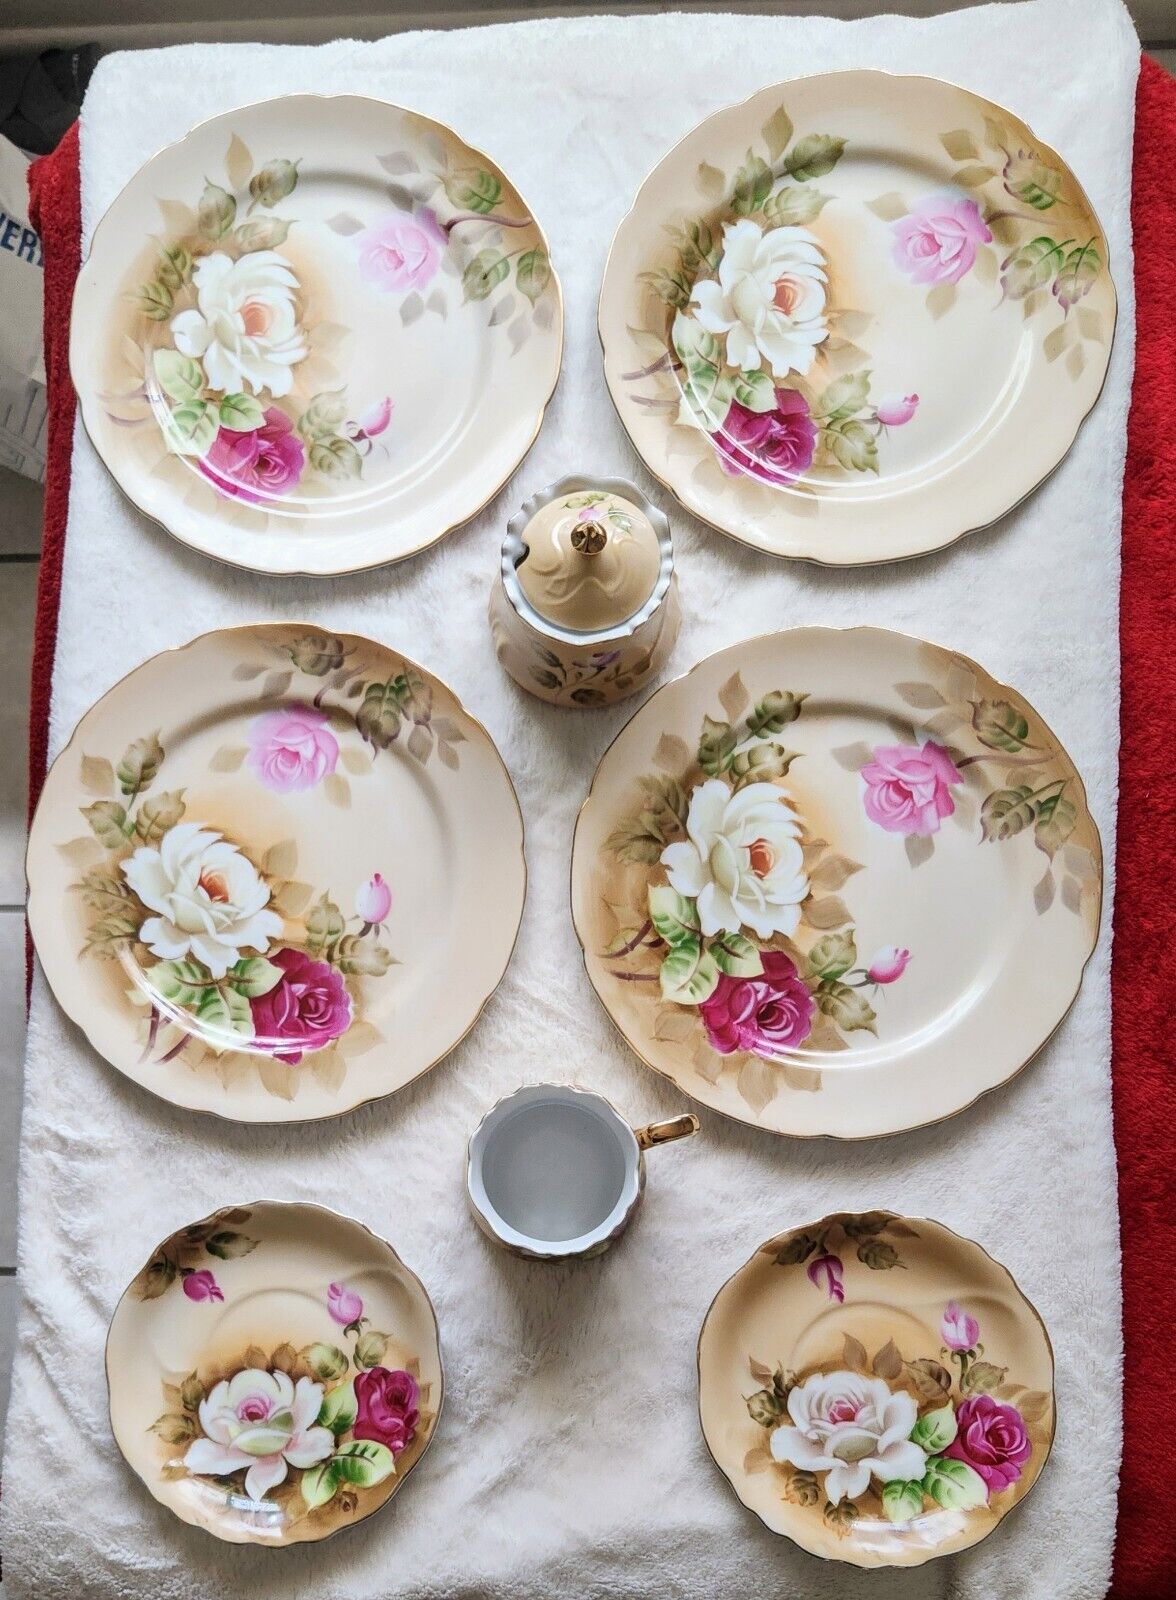 Vintage LEFTON CHINA Antique Roses Plates, Saucers, Sugar Bowl, Creamer set of 8